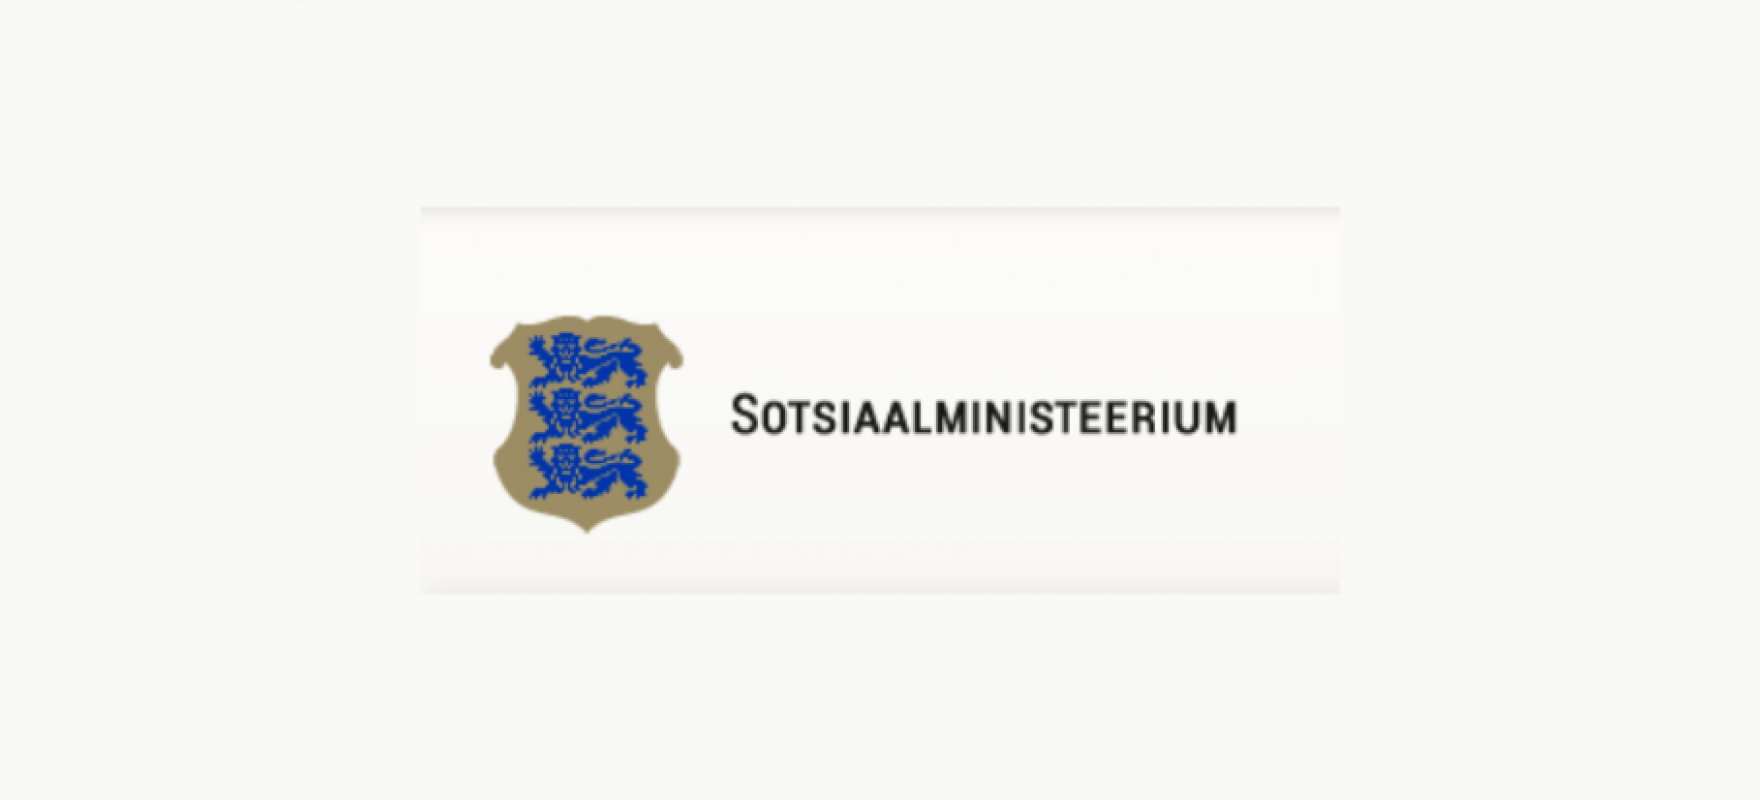 Sotsiaalministeeriumi logo